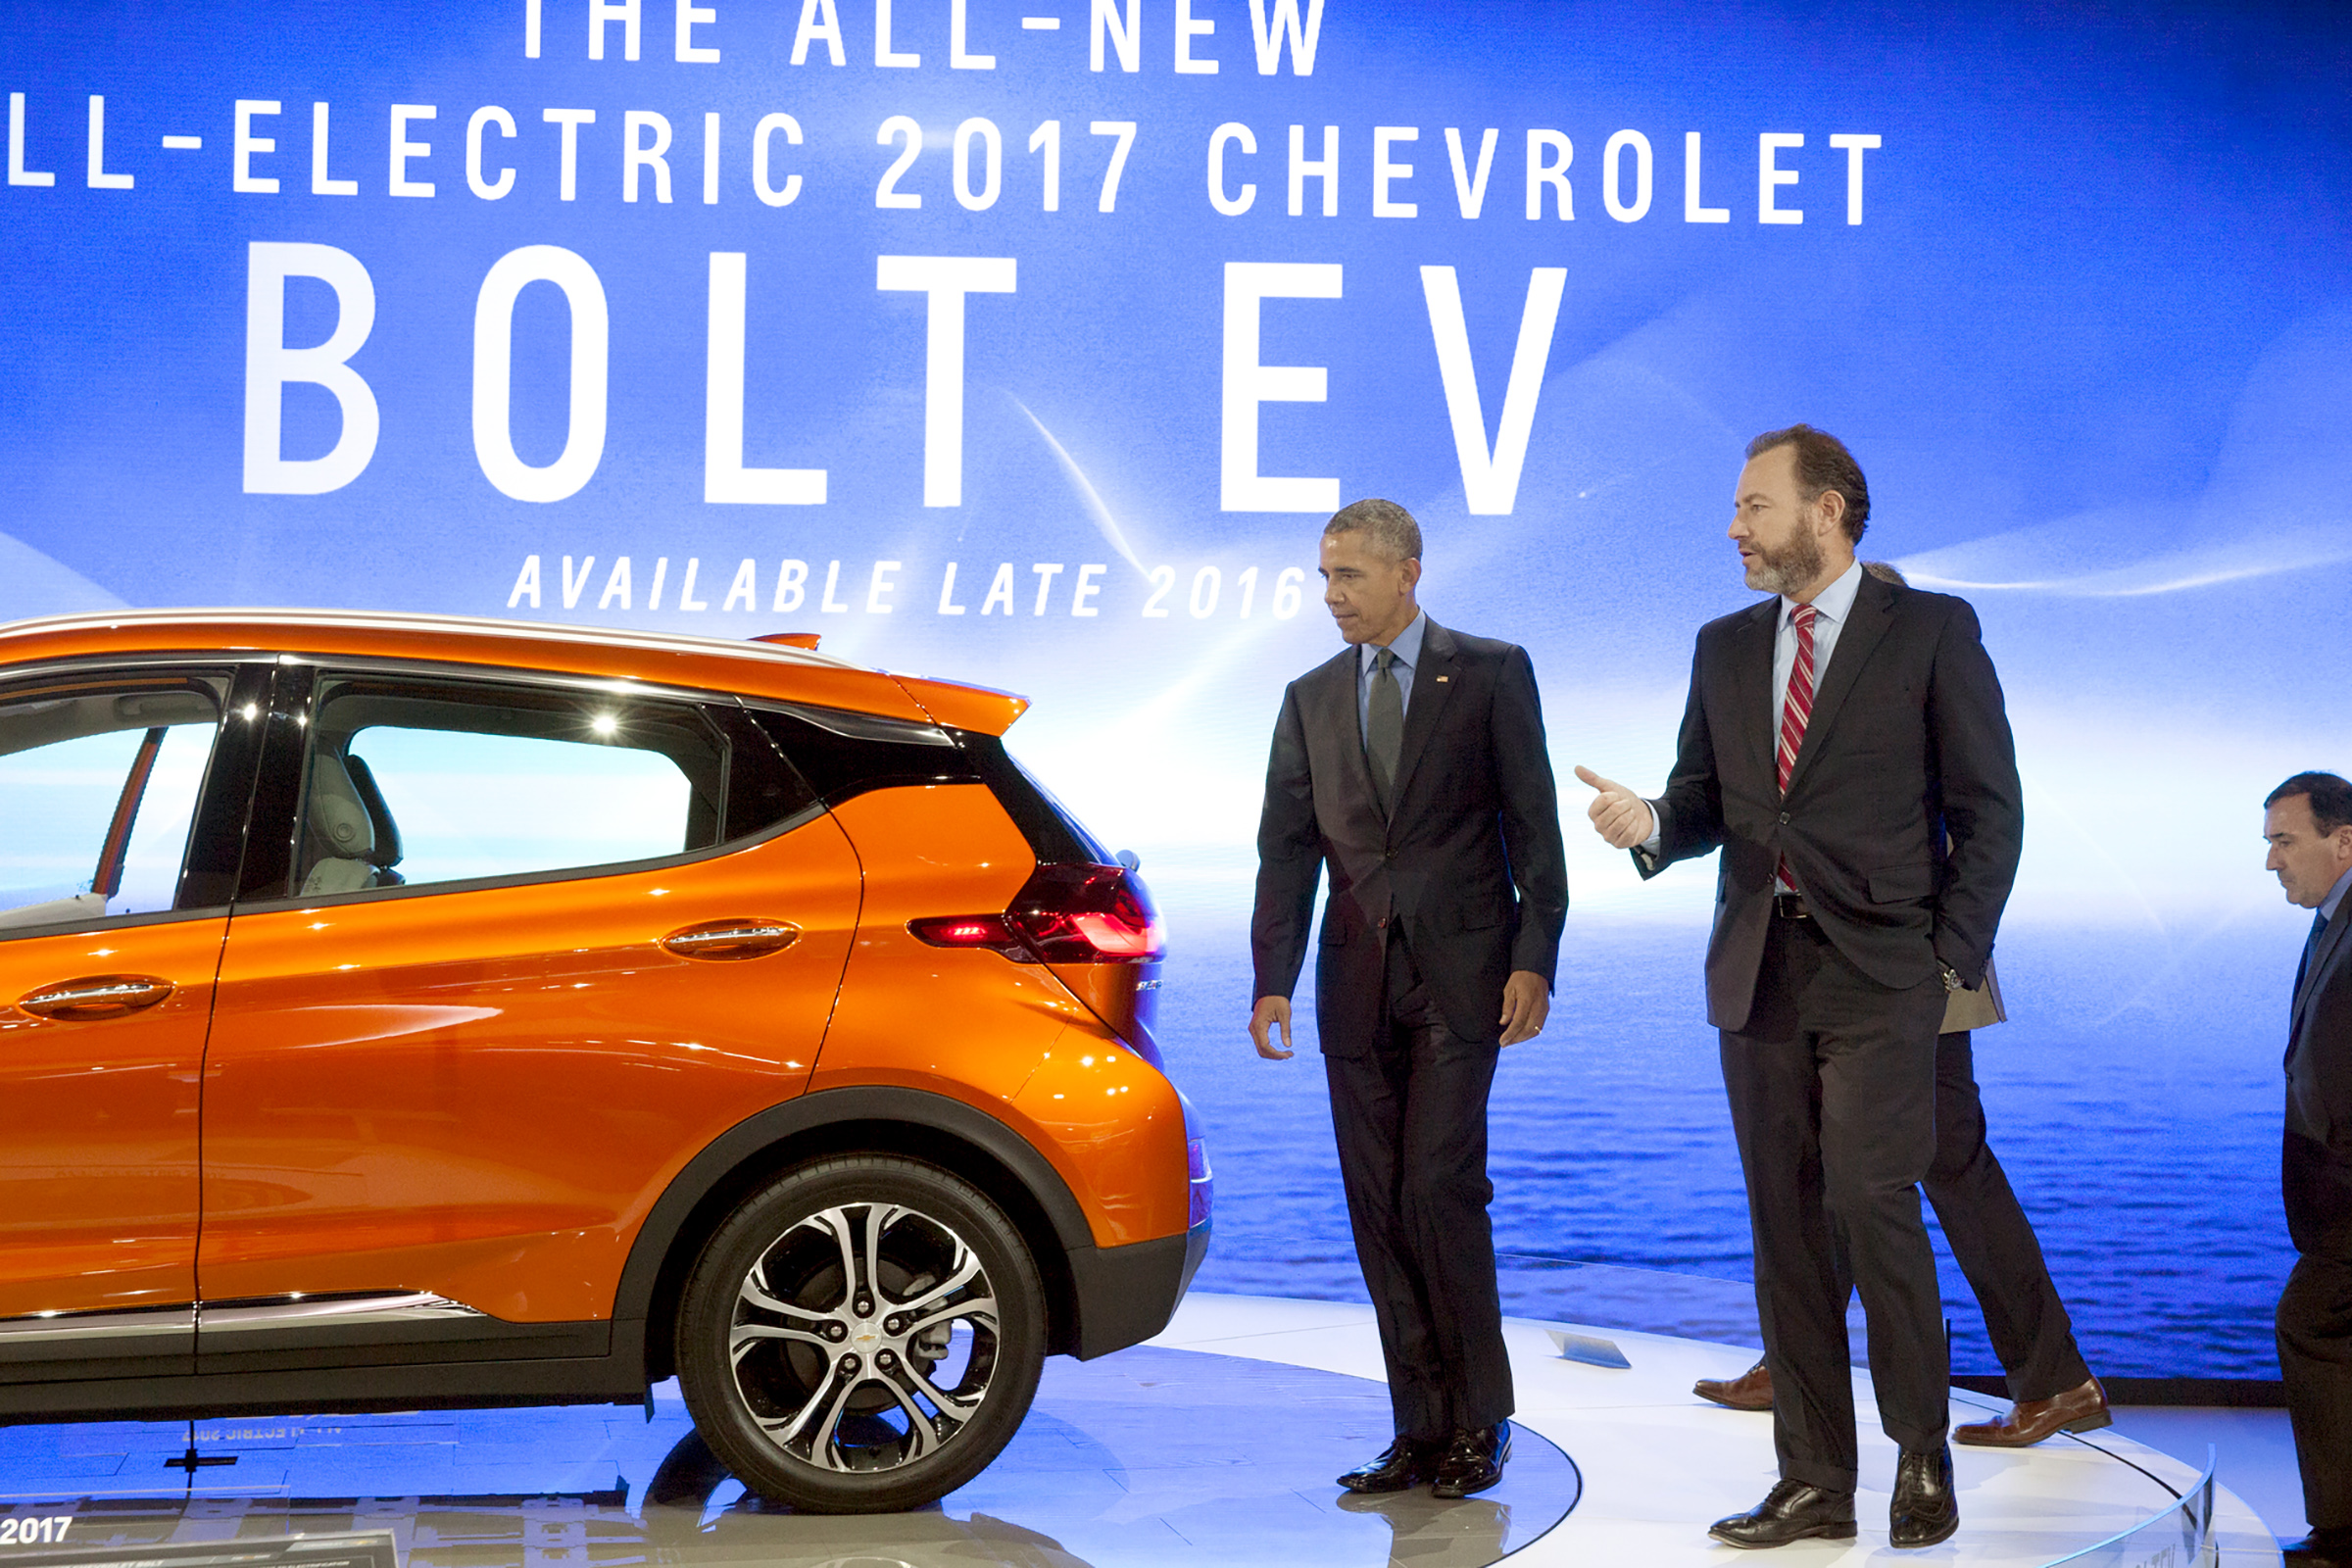 Obama Visits Detroit Auto Show, Checks Out Chevy Bolt EV Electric Car